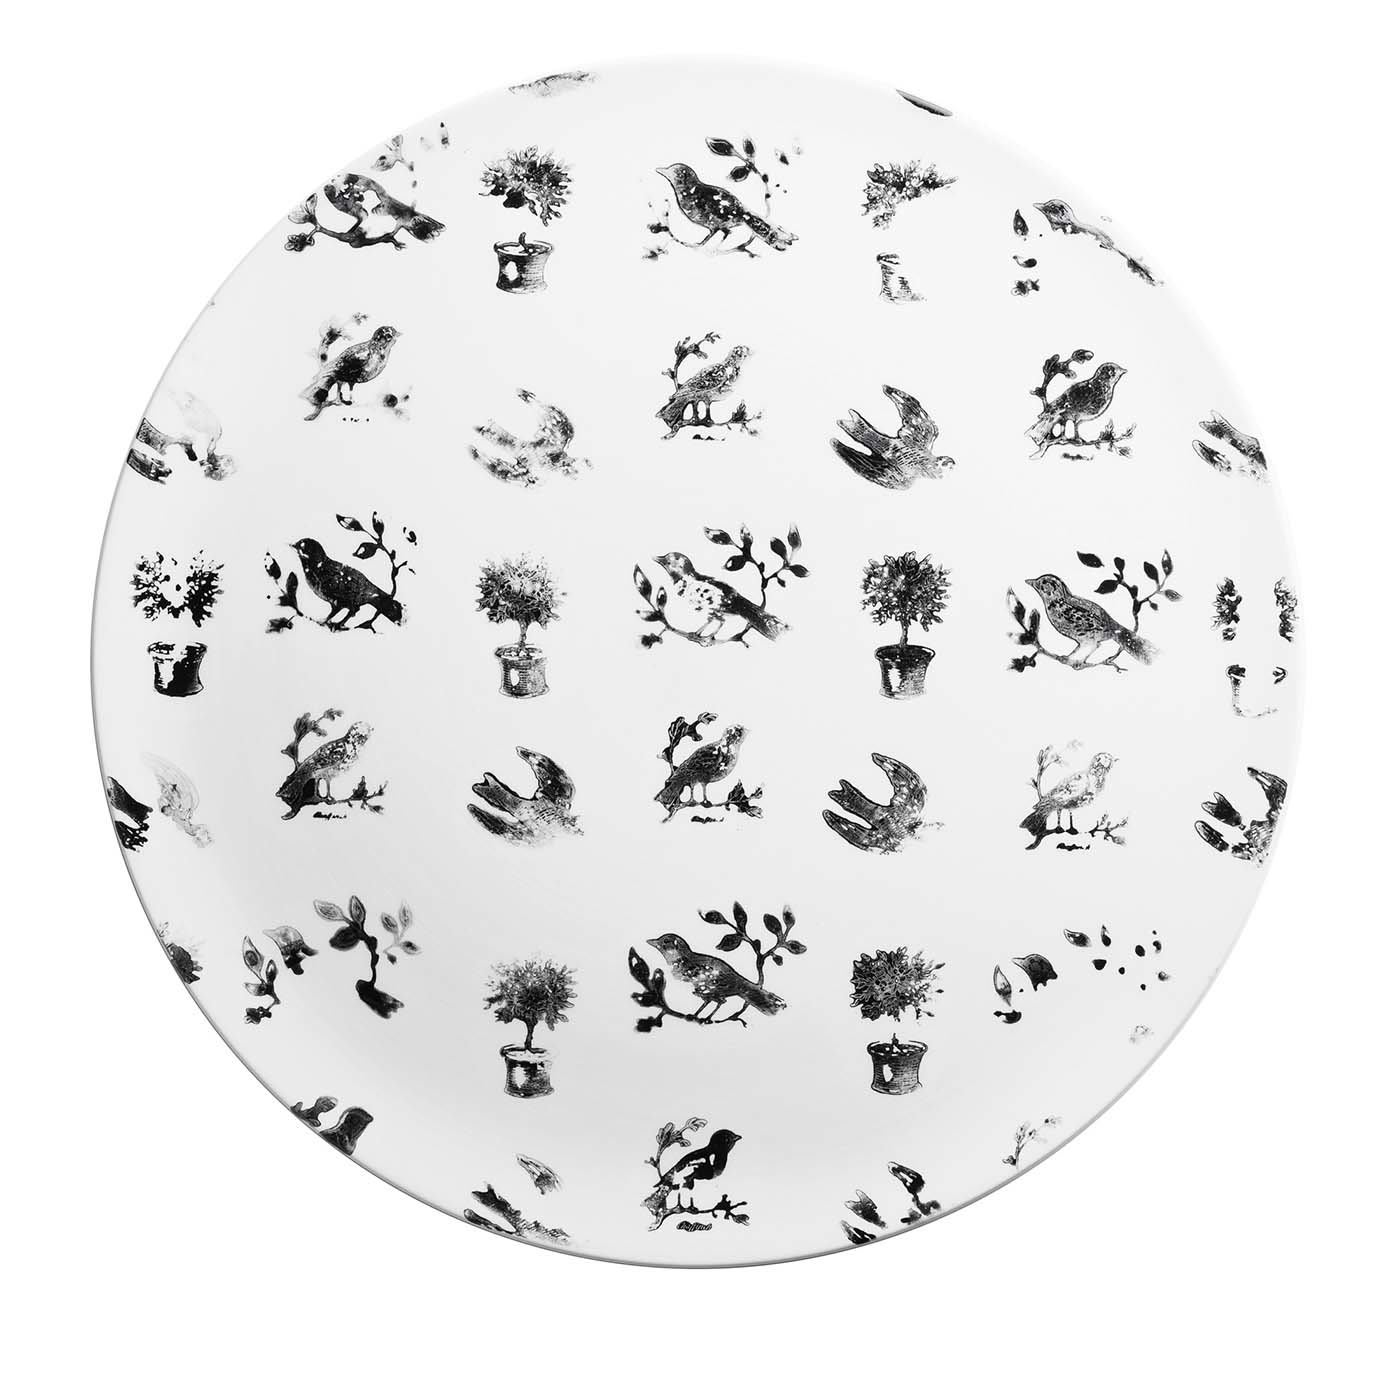 Wallpaper Decorative Plate - Angela Di Folco